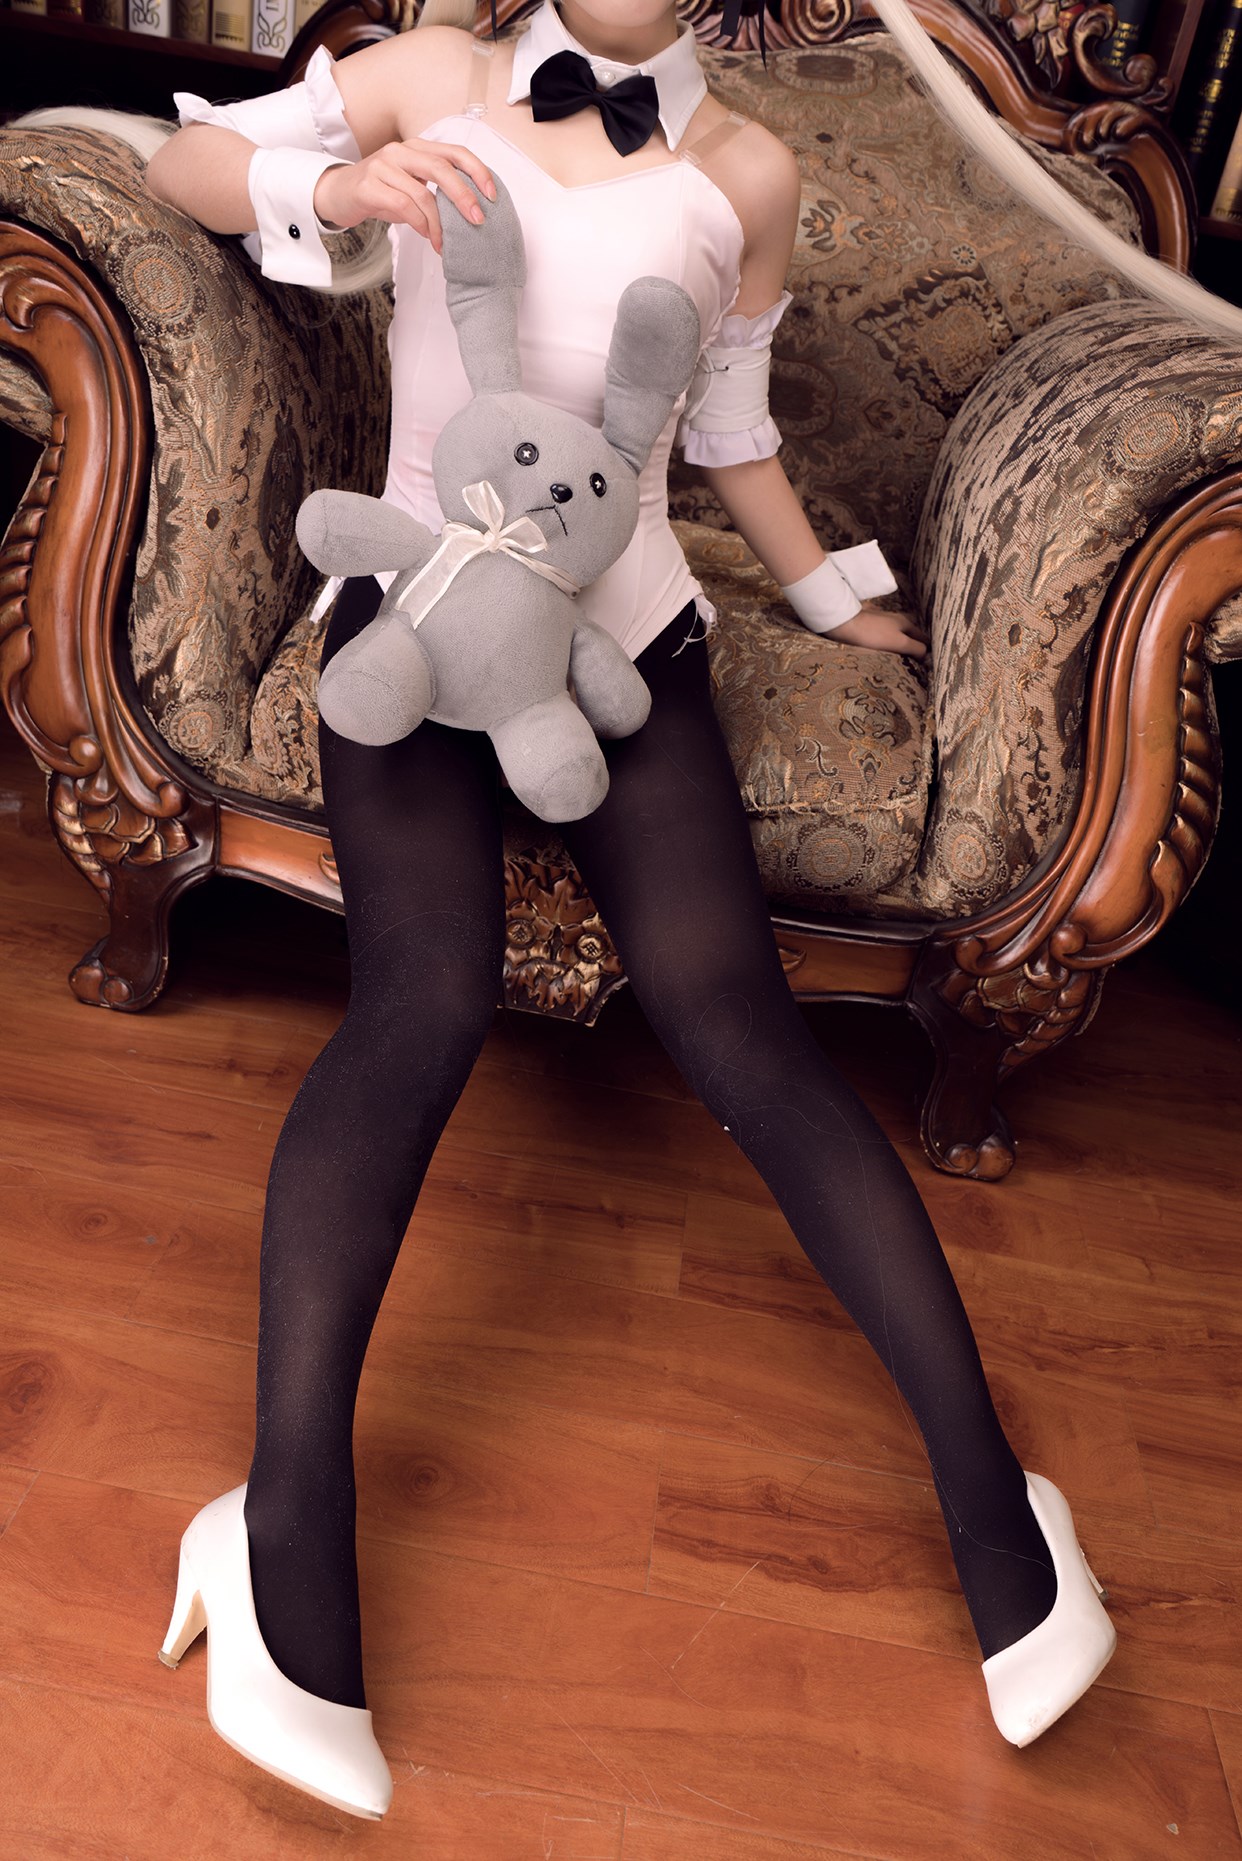 【兔玩映画】兔女郎vol.15-穹妹 兔玩映画 第36张